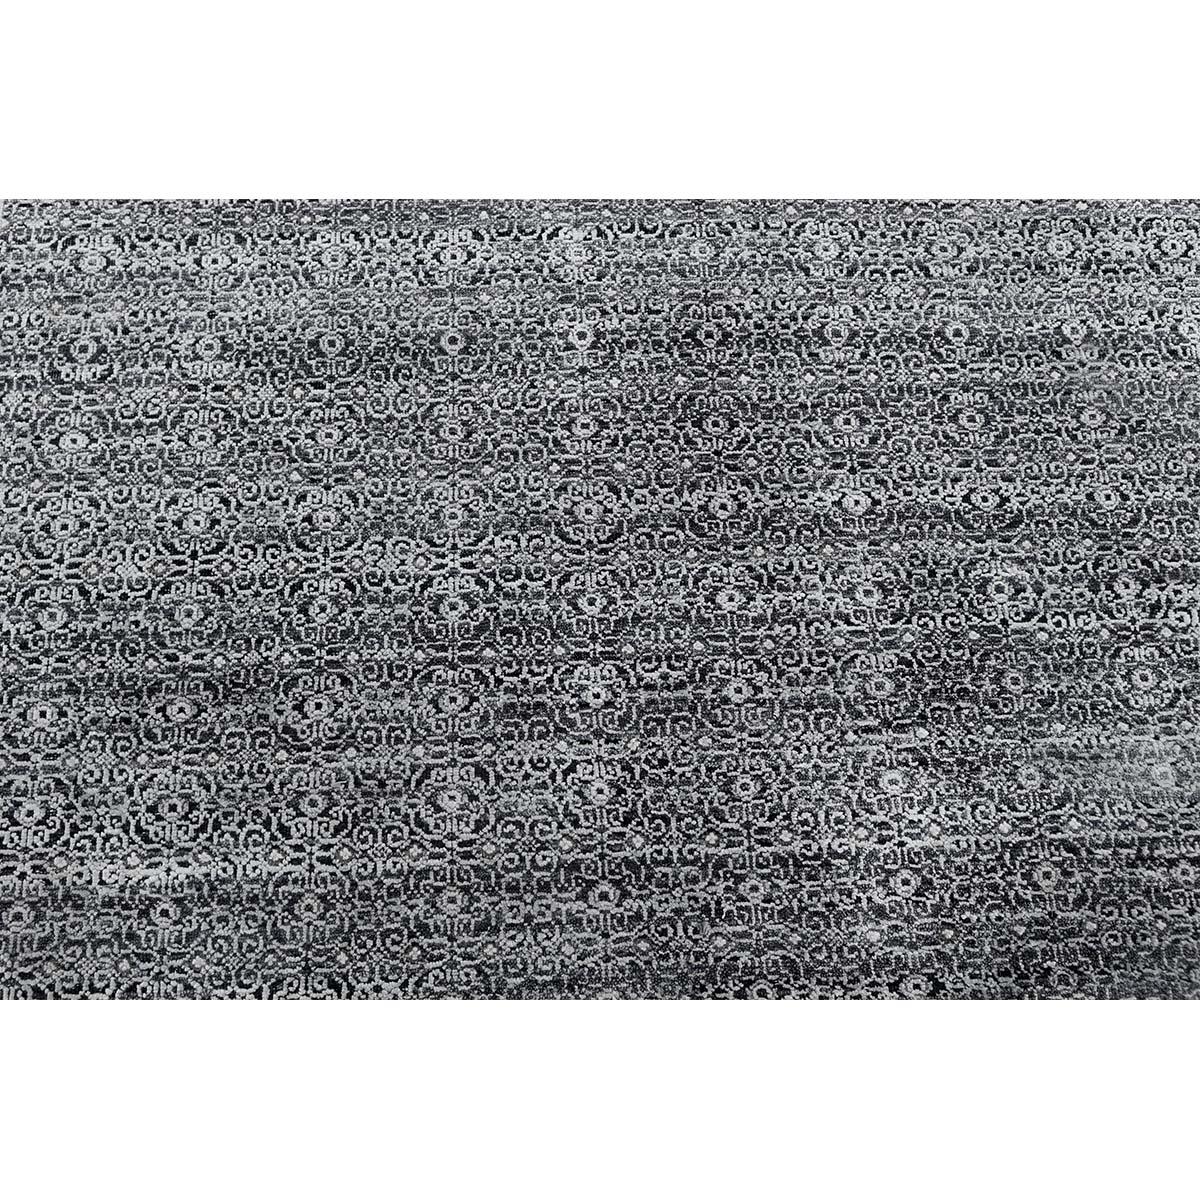 Cet élégant tapis tissé à la main en provenance d'Inde est tissé à partir des laines et des soies les plus fines pour créer une pièce douce et luxueuse qui s'adaptera à de nombreux environnements différents.
